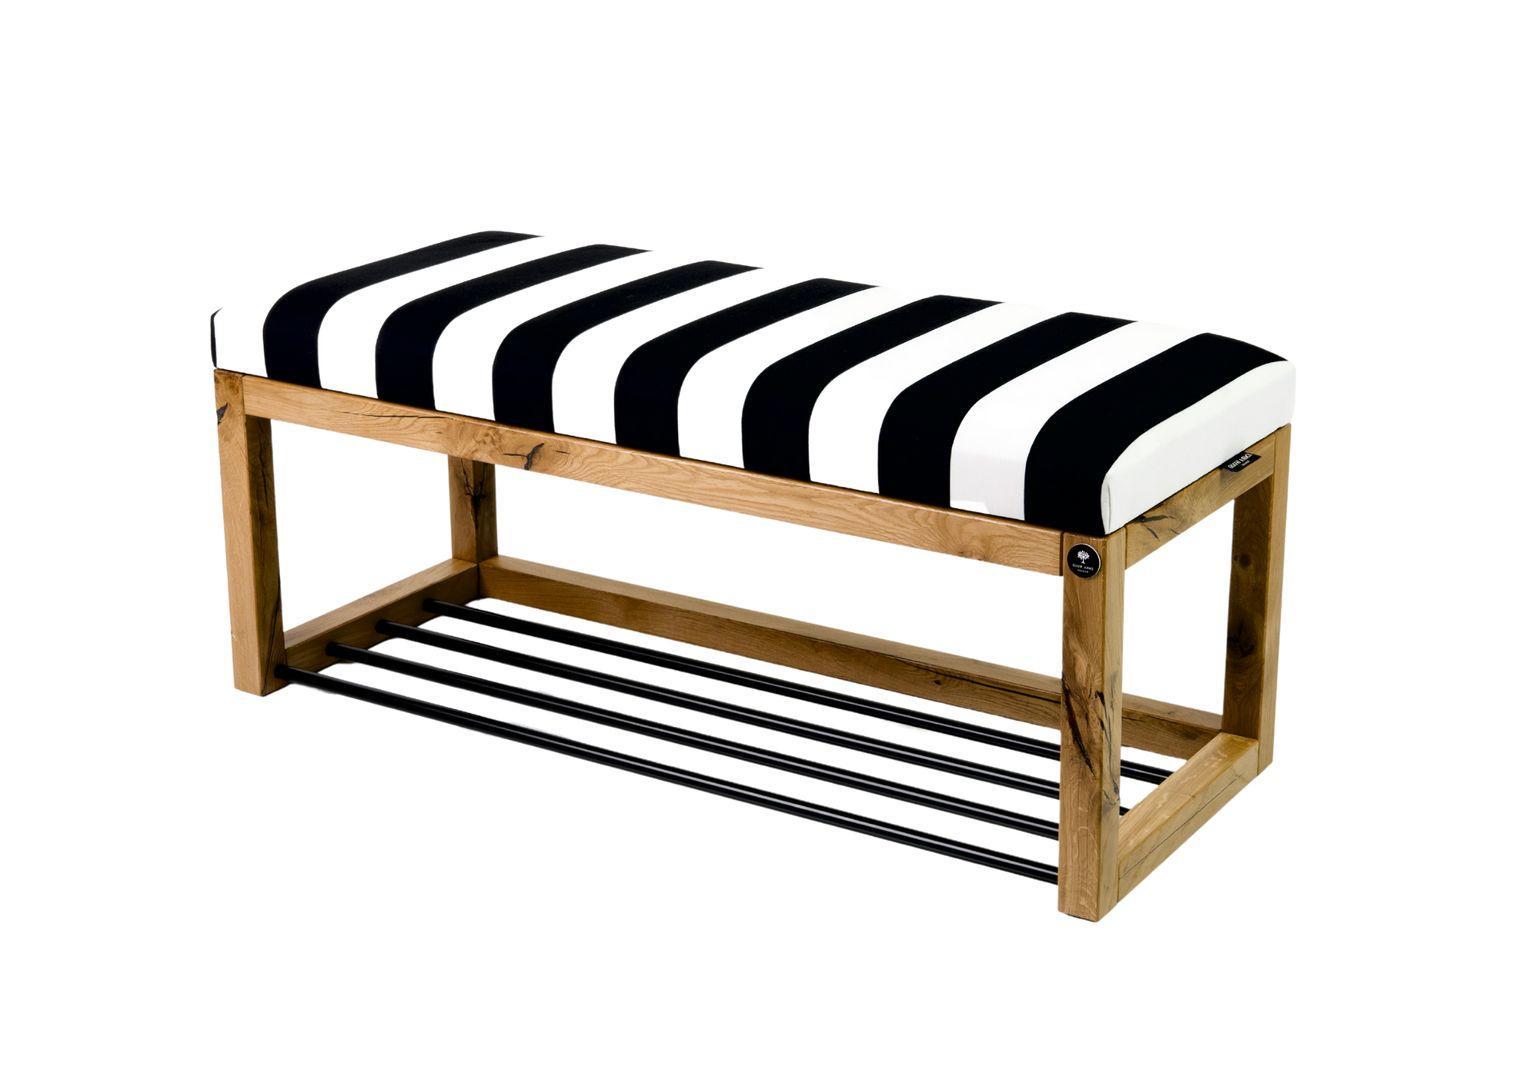 Siedzisko do przedpokoju LPG-4 50x35x45 cm ławka tapicerowana nogi naturalne dąb lite drewno tkanina w pasy czarno-biała nr. 1